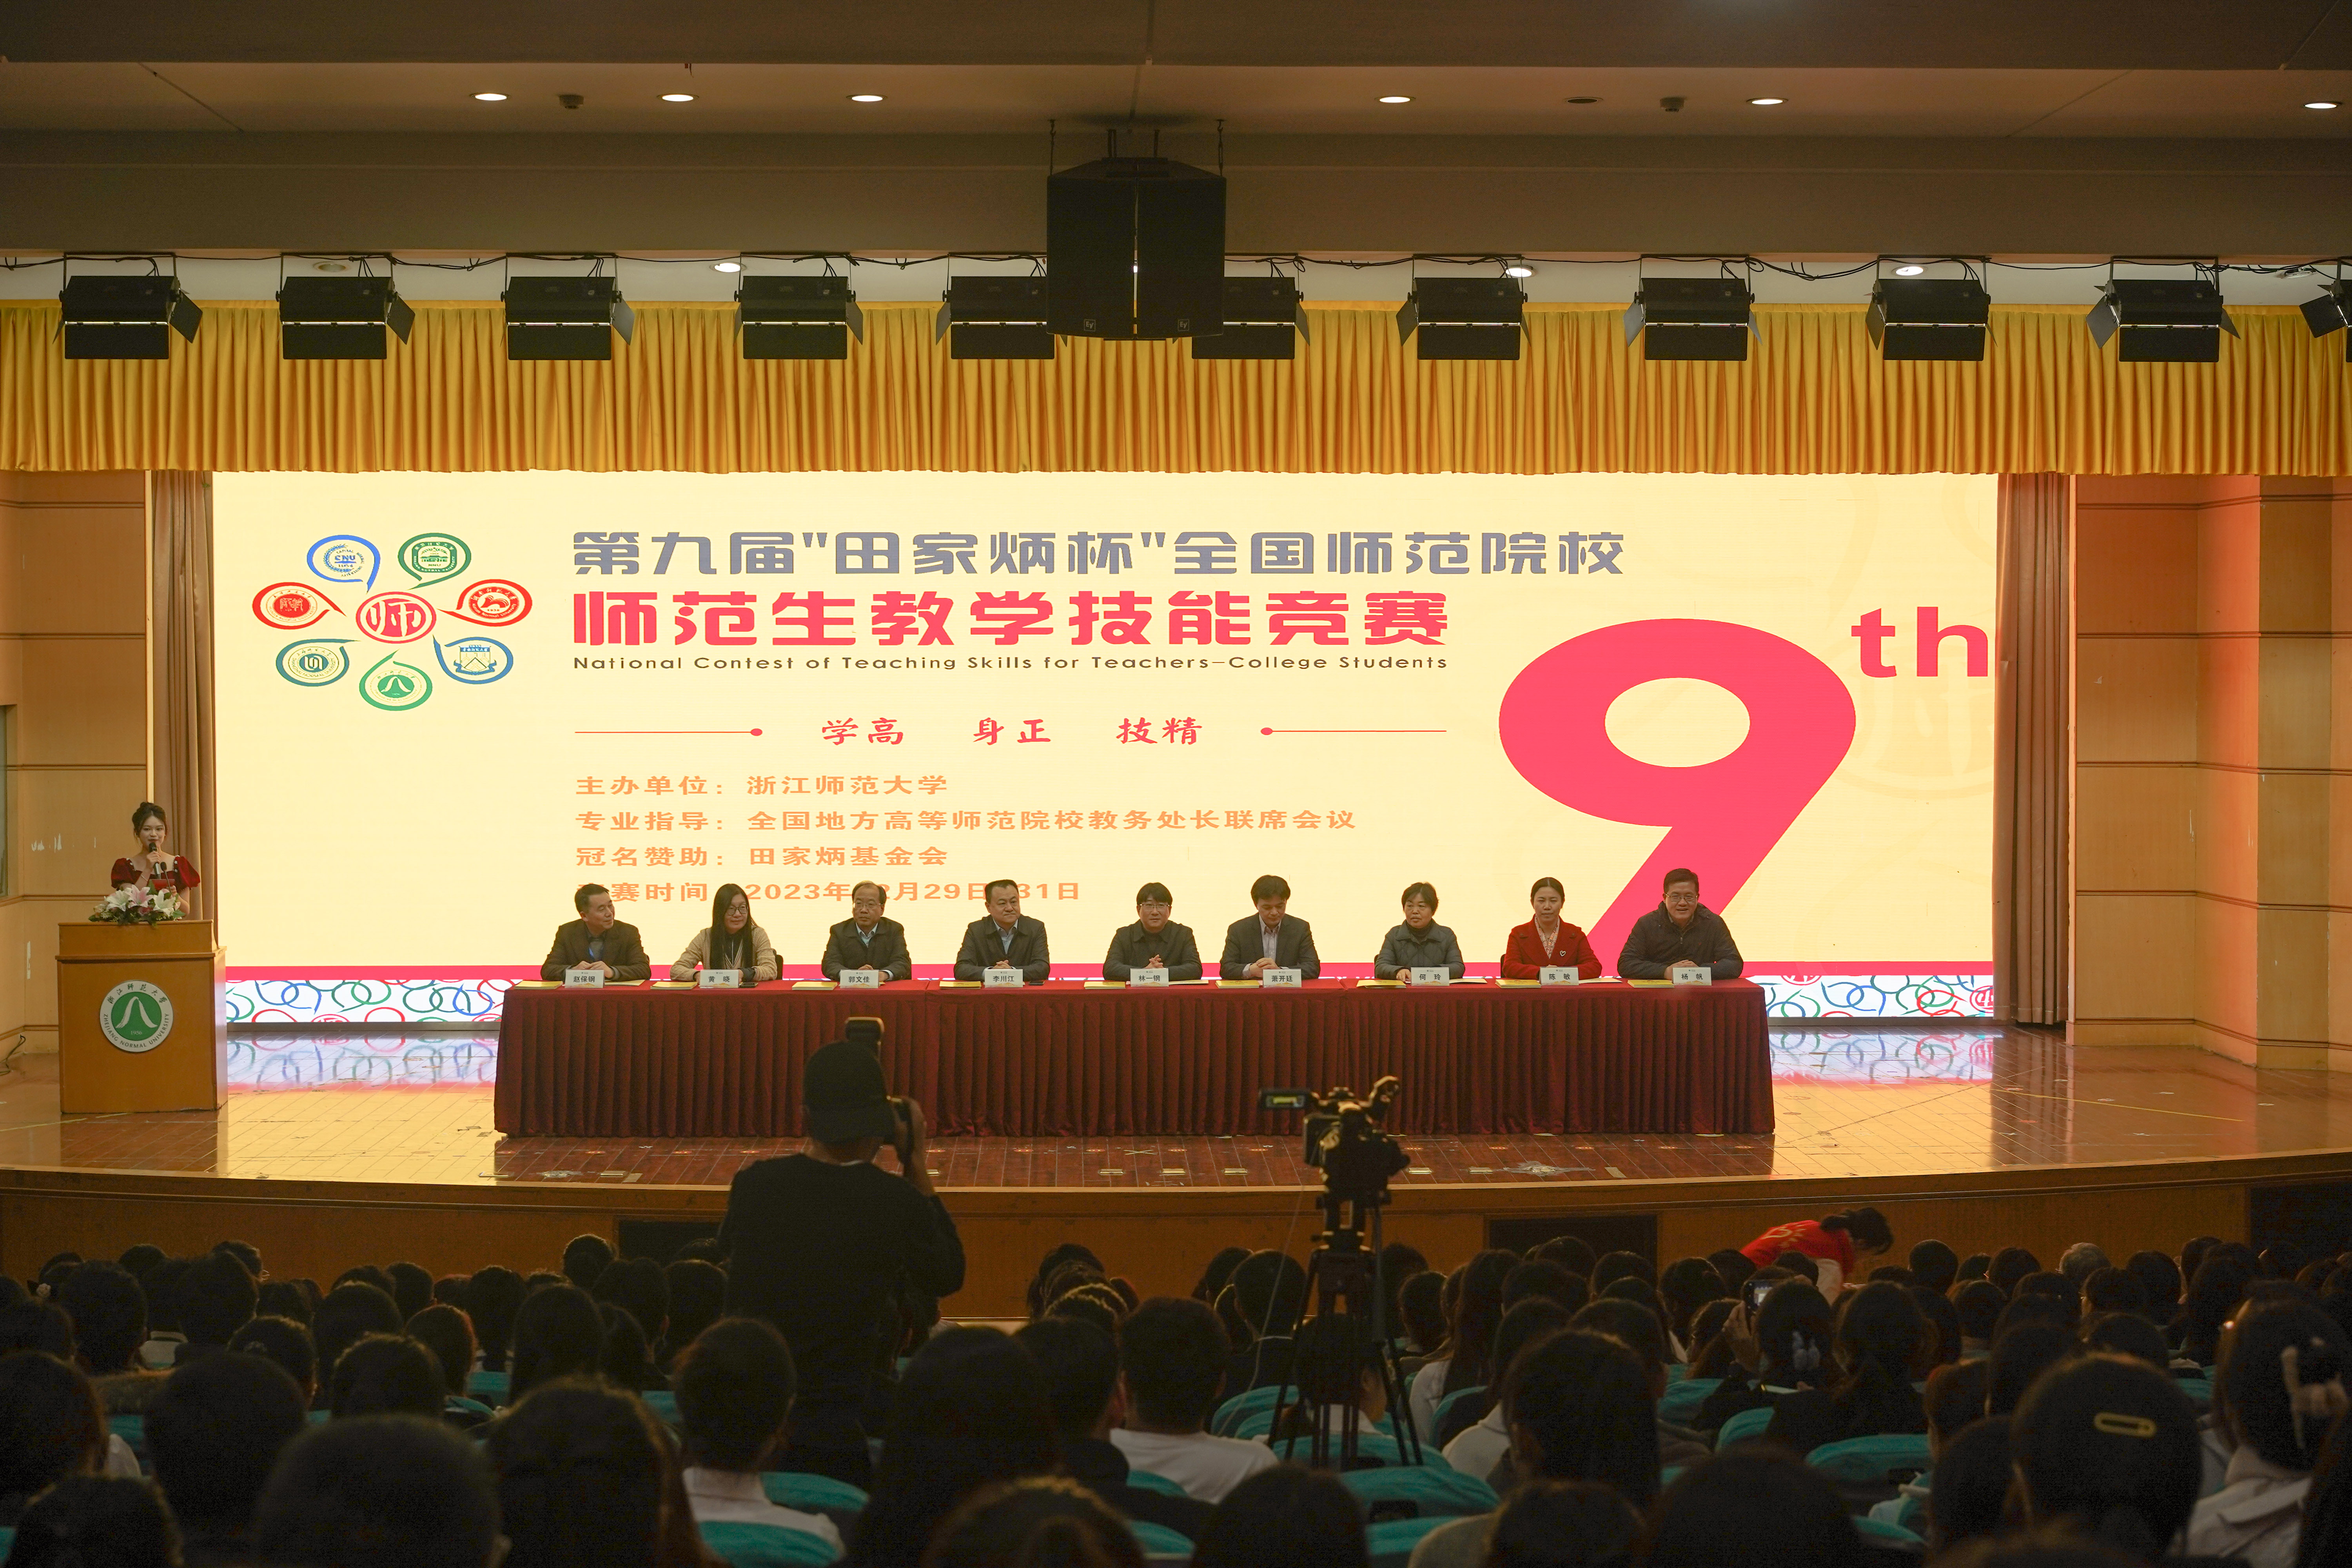 郭文佳副校长（主席台左起第三）作为特邀嘉宾为选手颁奖